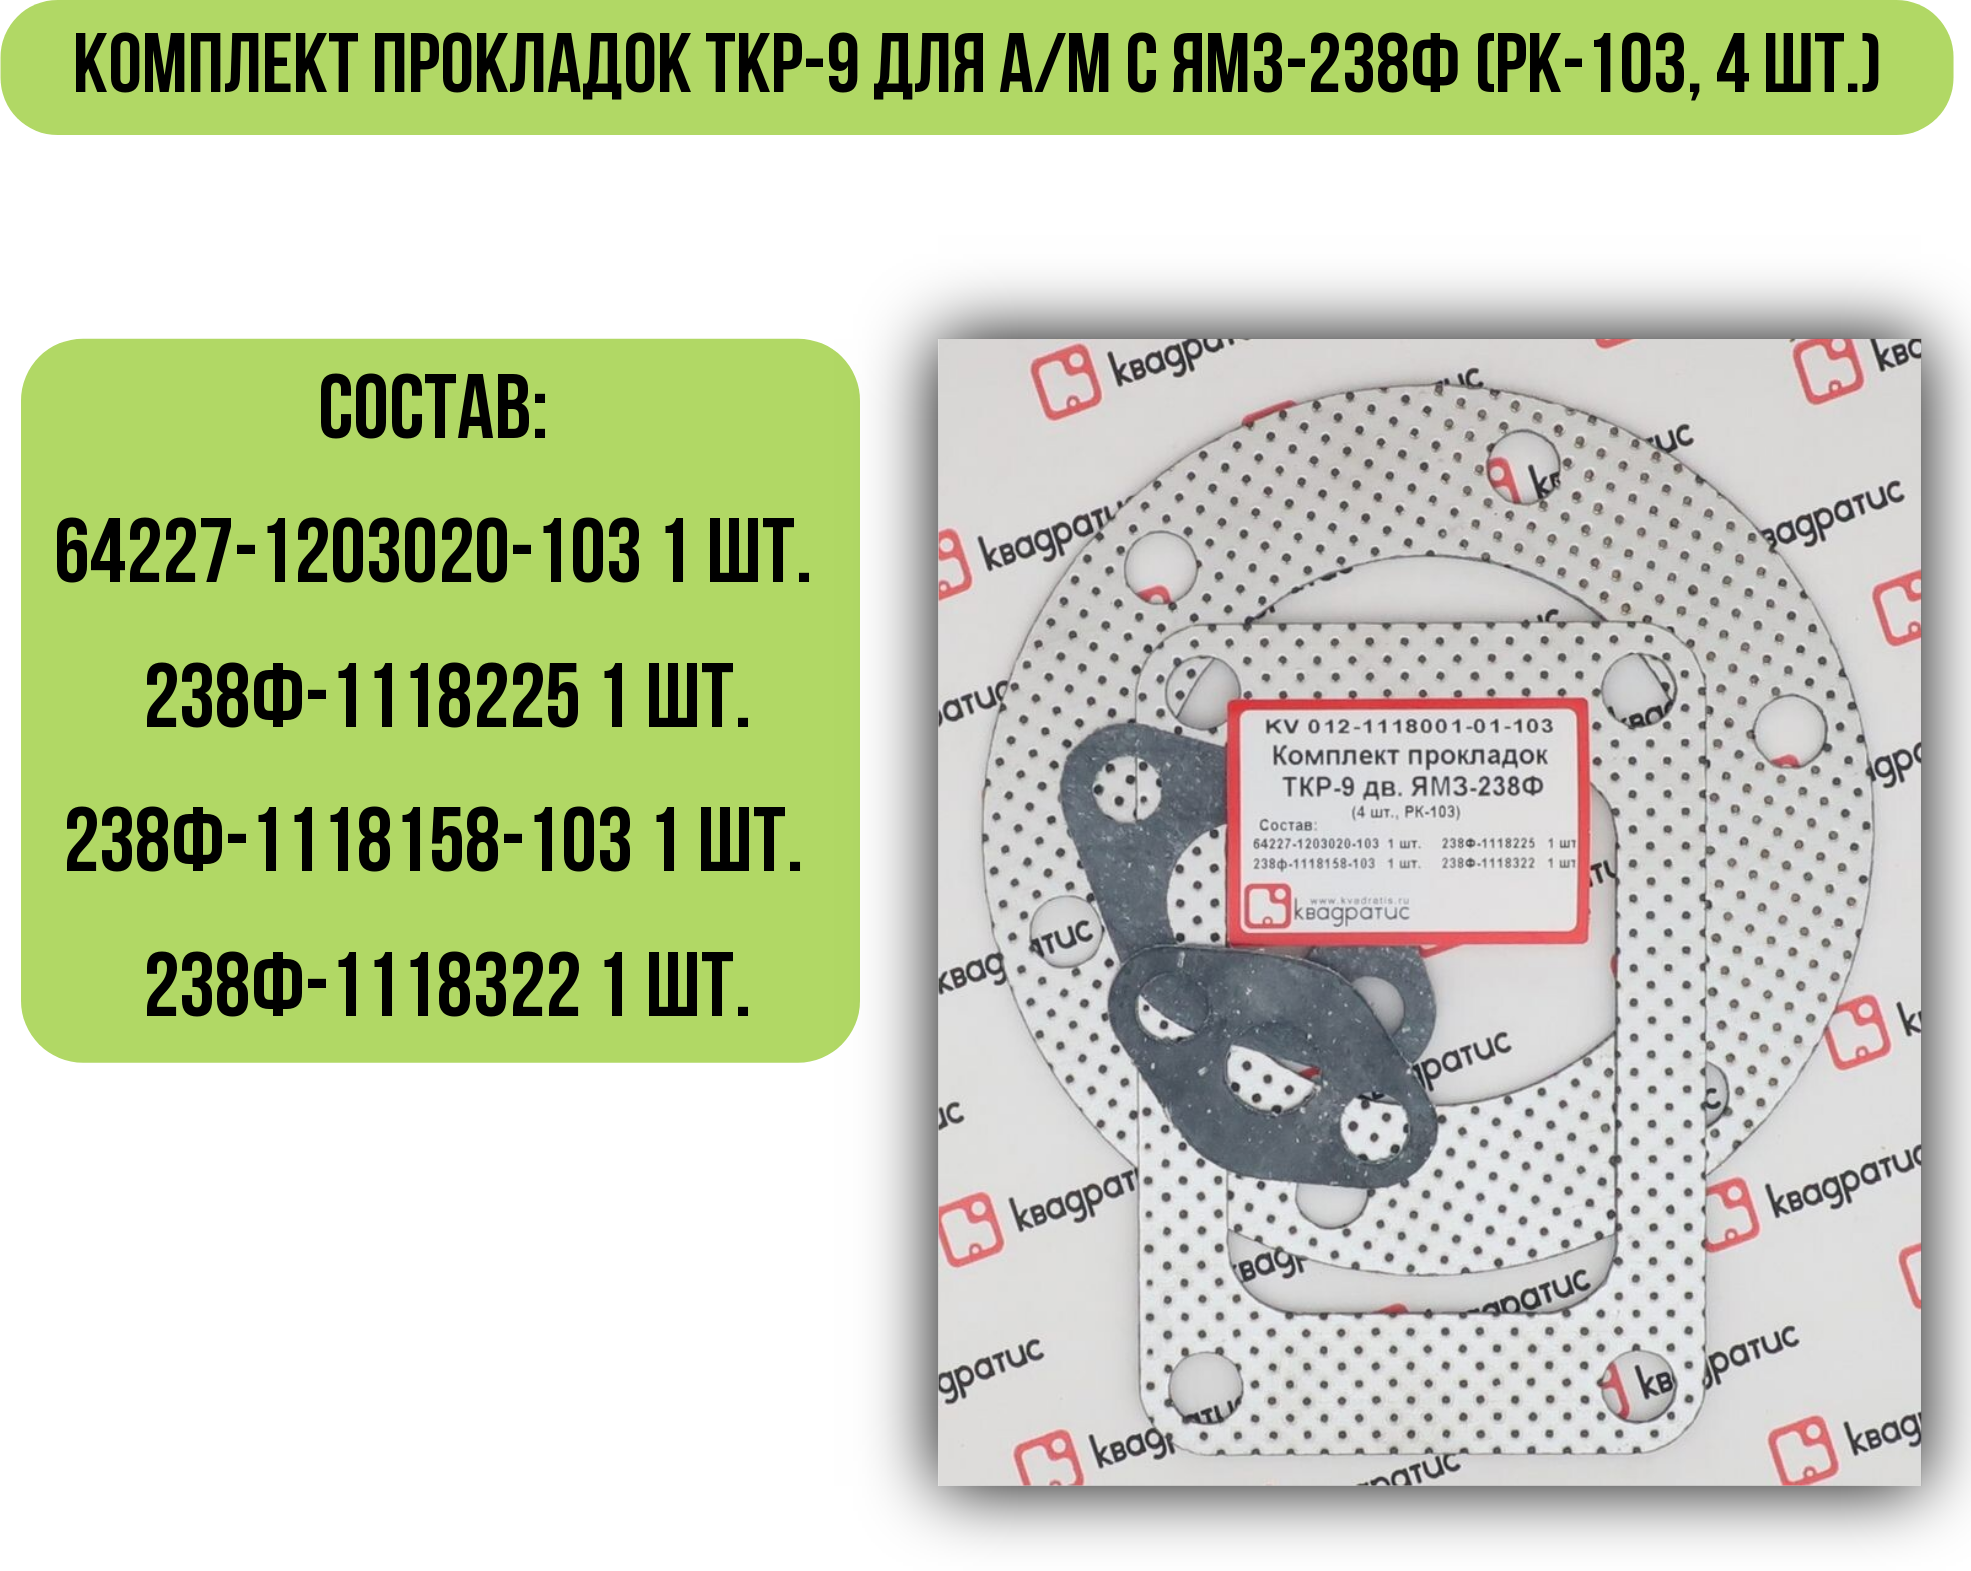 Комплект прокладок ТКР-9 для а/м с ЯМЗ-238Ф (РК-103, 4 шт.)